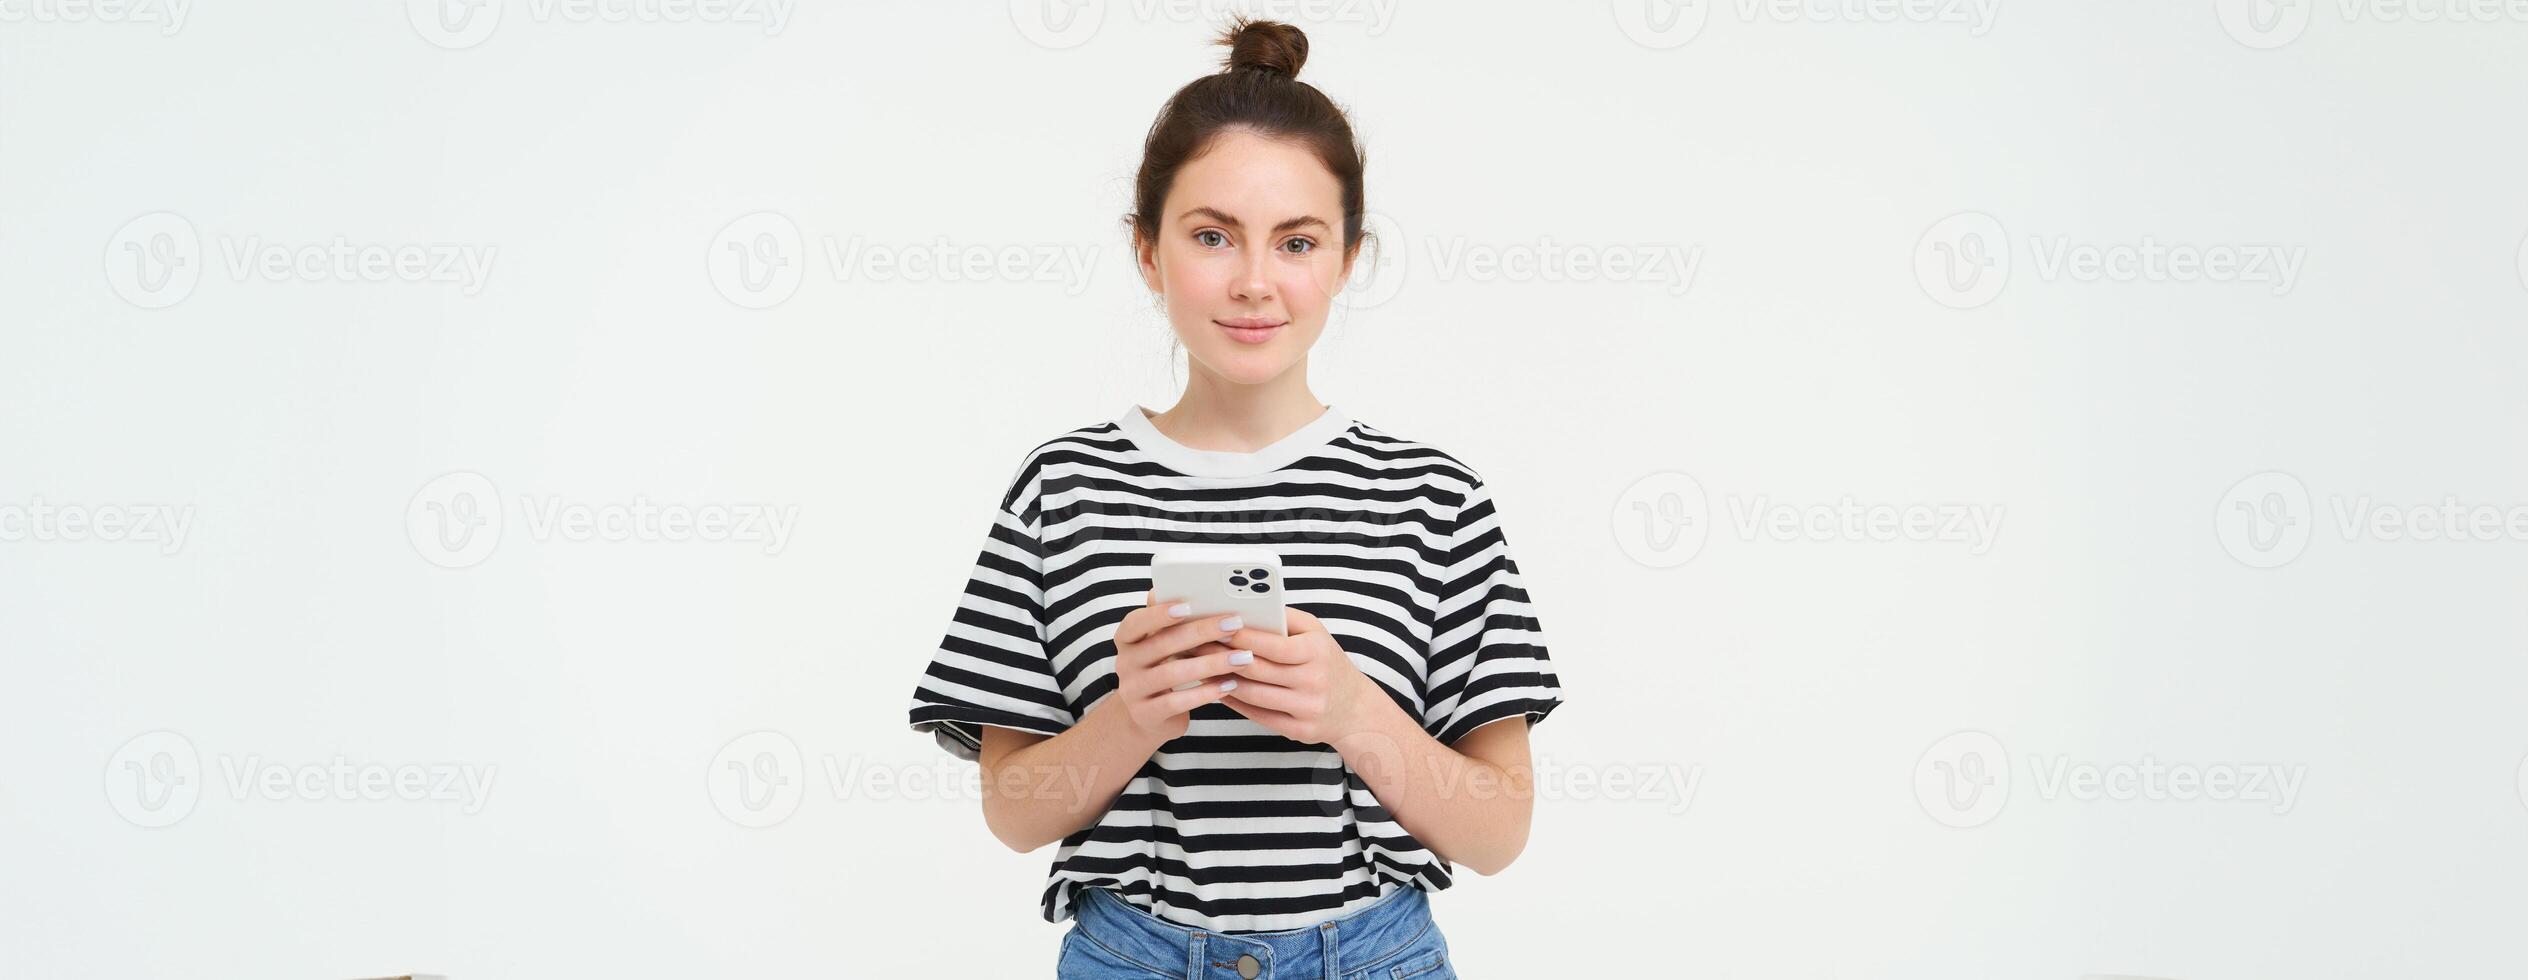 tecnologia e stile di vita. giovane donna in piedi al di sopra di bianca sfondo con smartphone foto